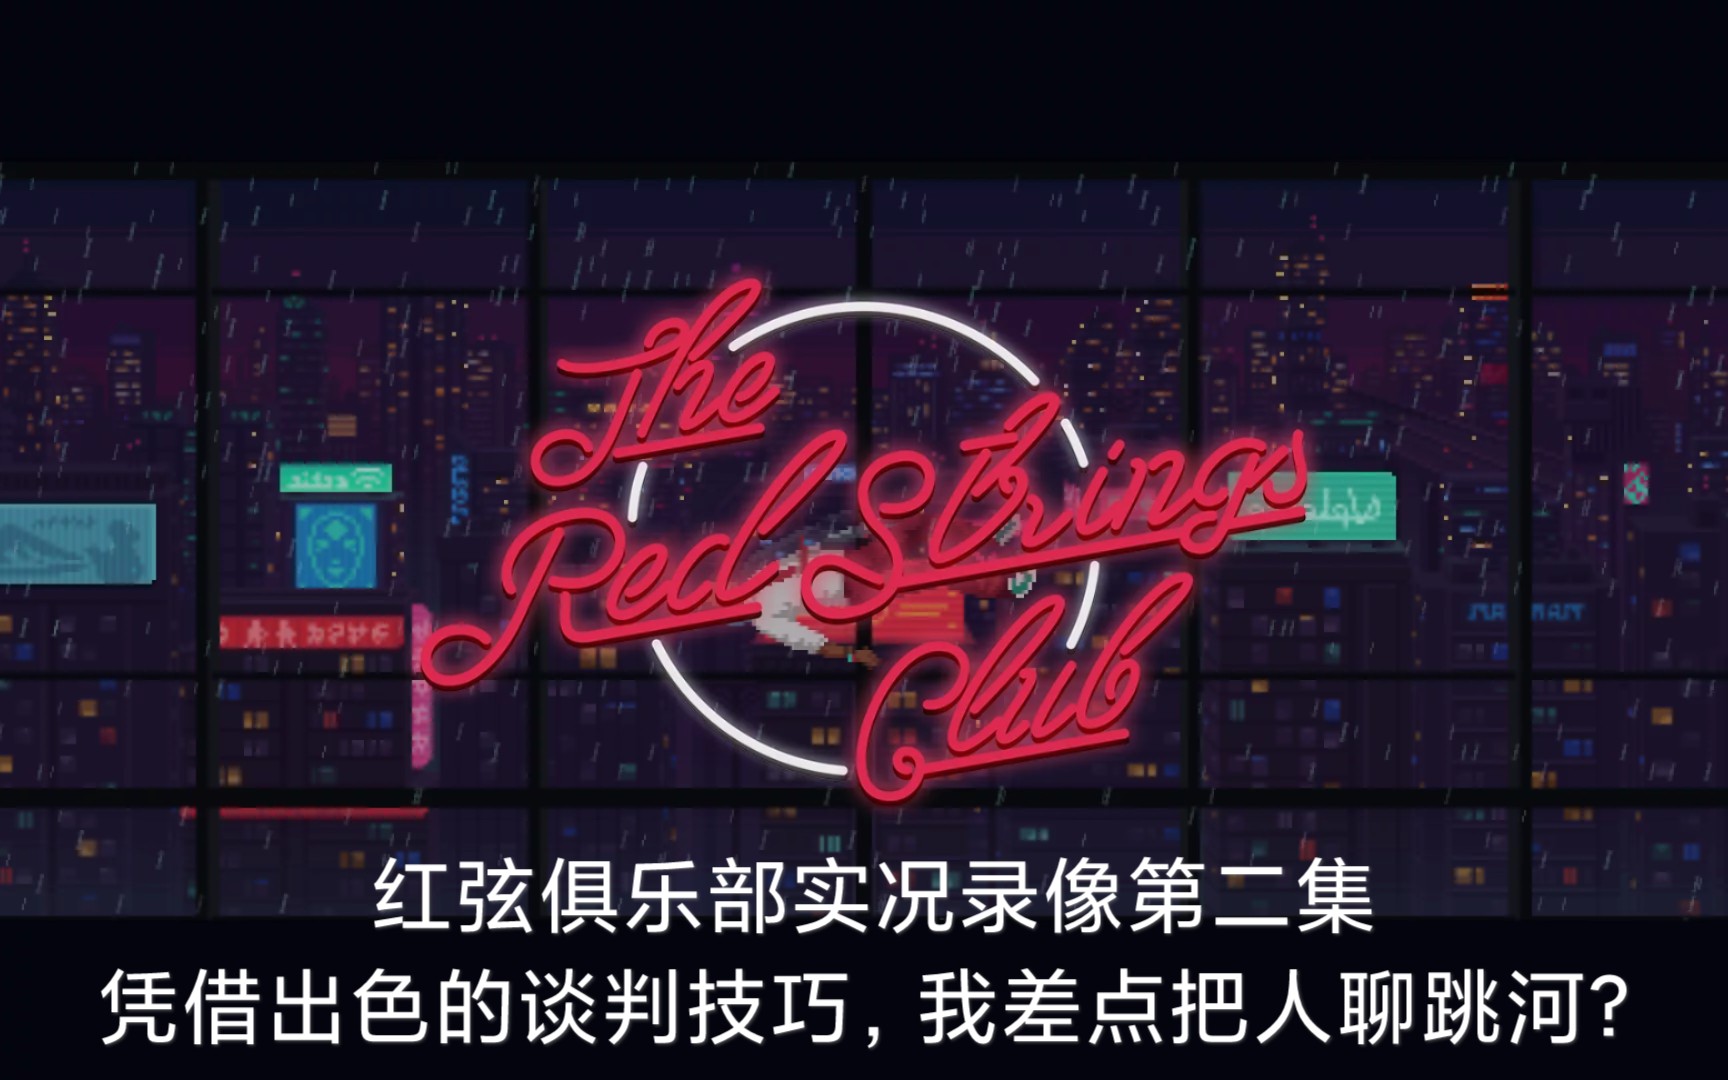 三度先生/红弦俱乐部the red strings club实况录像第二集:凭借出色的